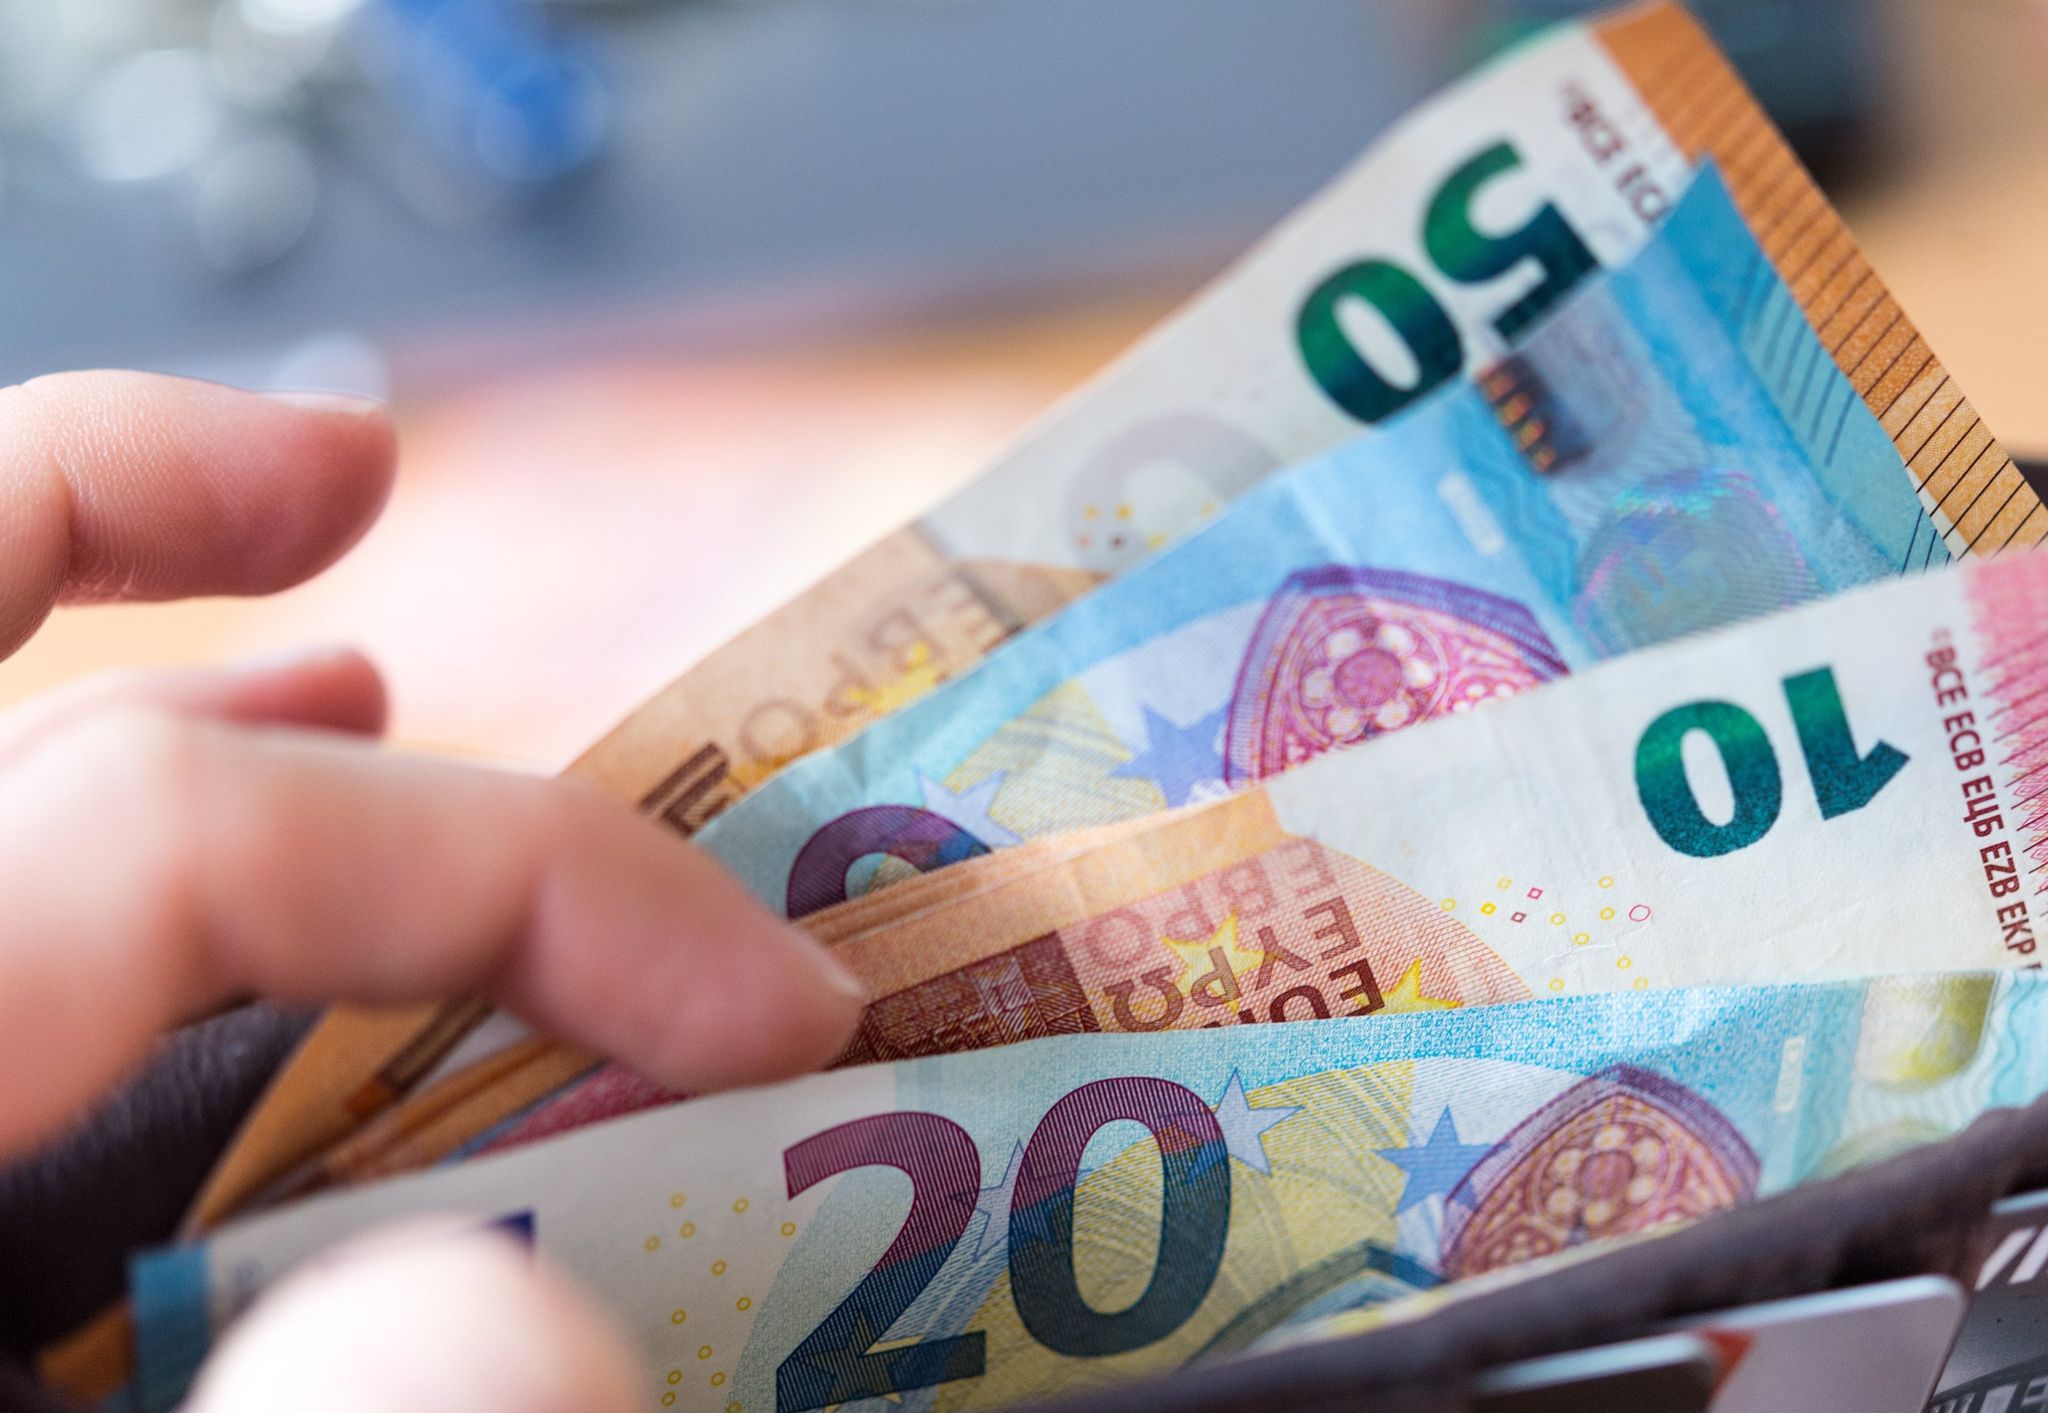 Einer Studie zufolge haben aktuell vier von zehn Menschen in Deutschland weniger Geld als noch vor einem Jahr, über das sie monatlich frei verfügen können.